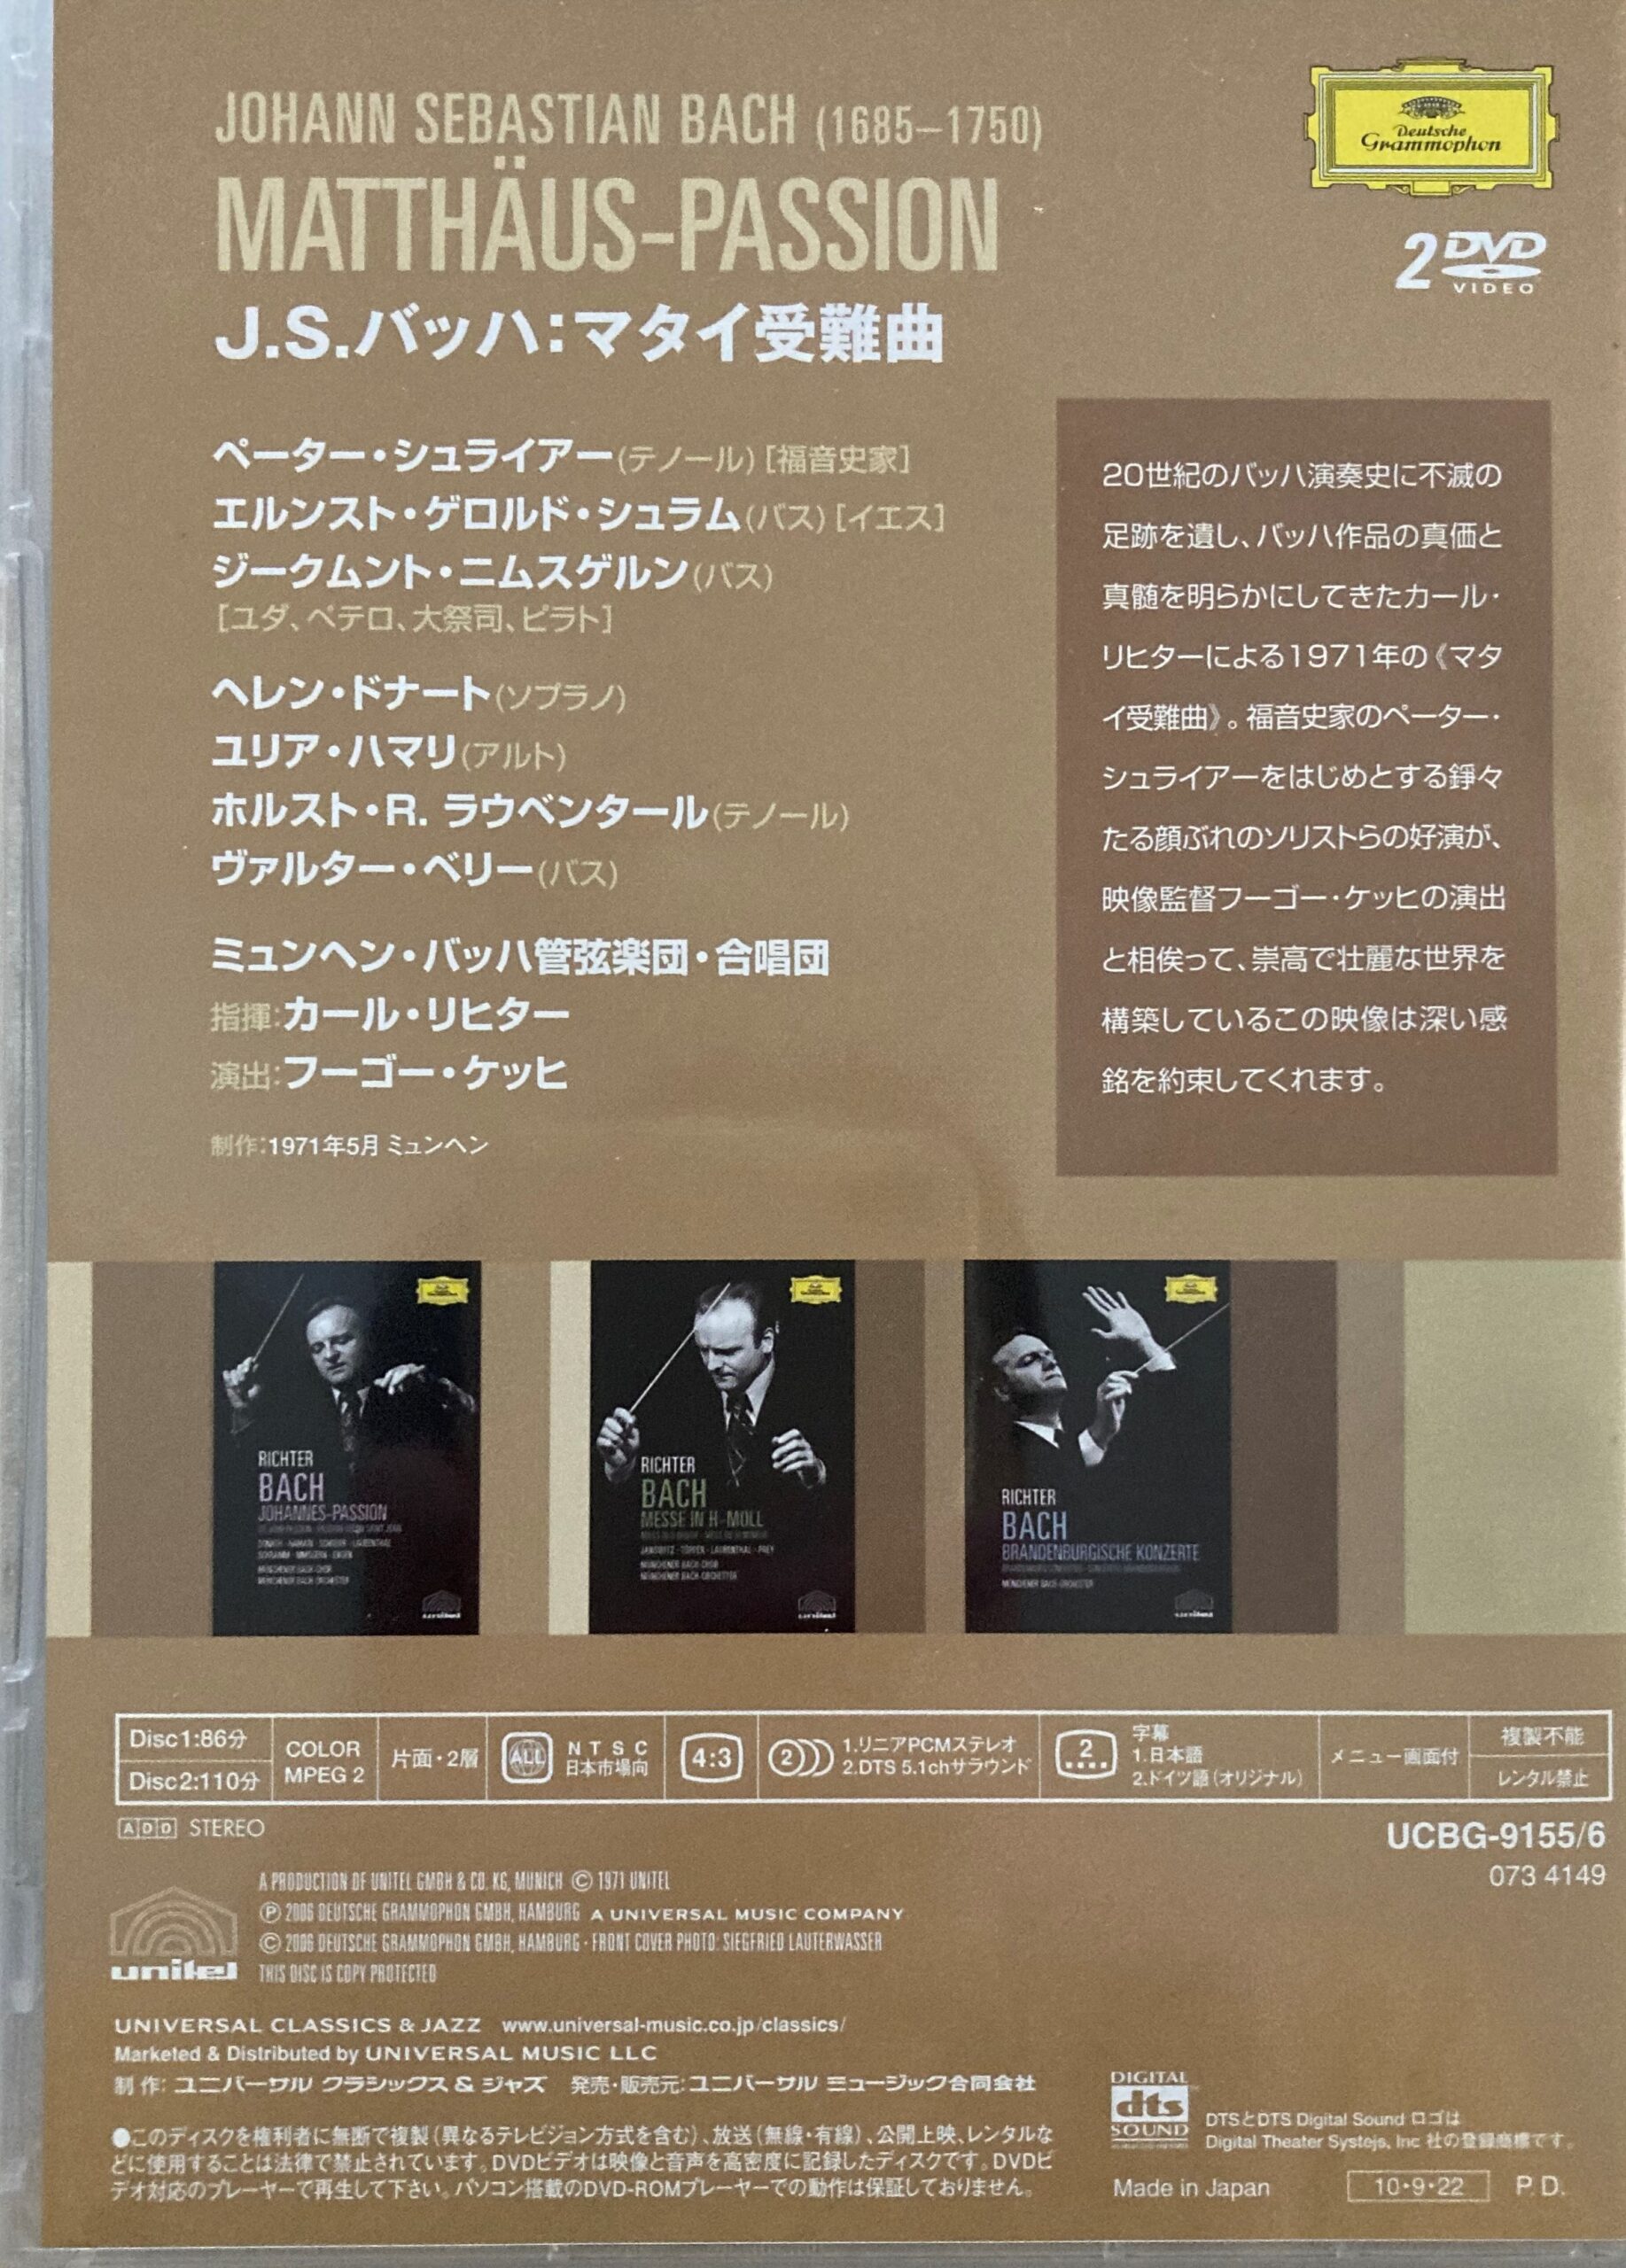 バッハ「マタイ受難曲」：リヒターの伝説的な至高の映像（日本語字幕付き）が格安で再発売！これぞ最高の文化遺産。買うしかない！！ |  atsuatsutakechan's blog